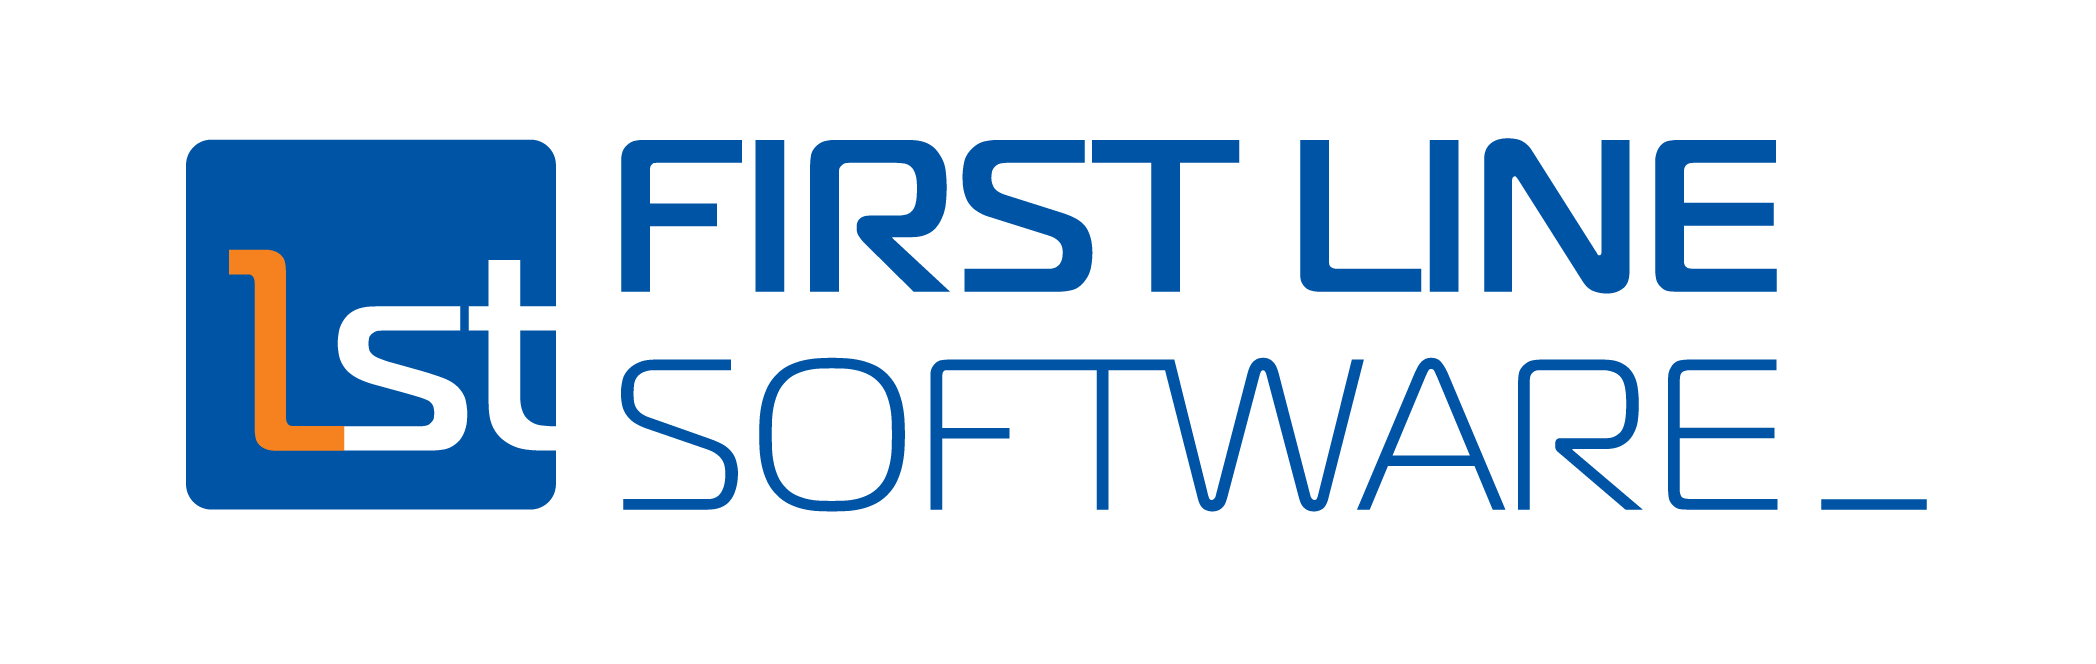 Компания first. First line software логотип. First line software (ф-лайн софтвер) логотип. Software компания. One line логотип компания.